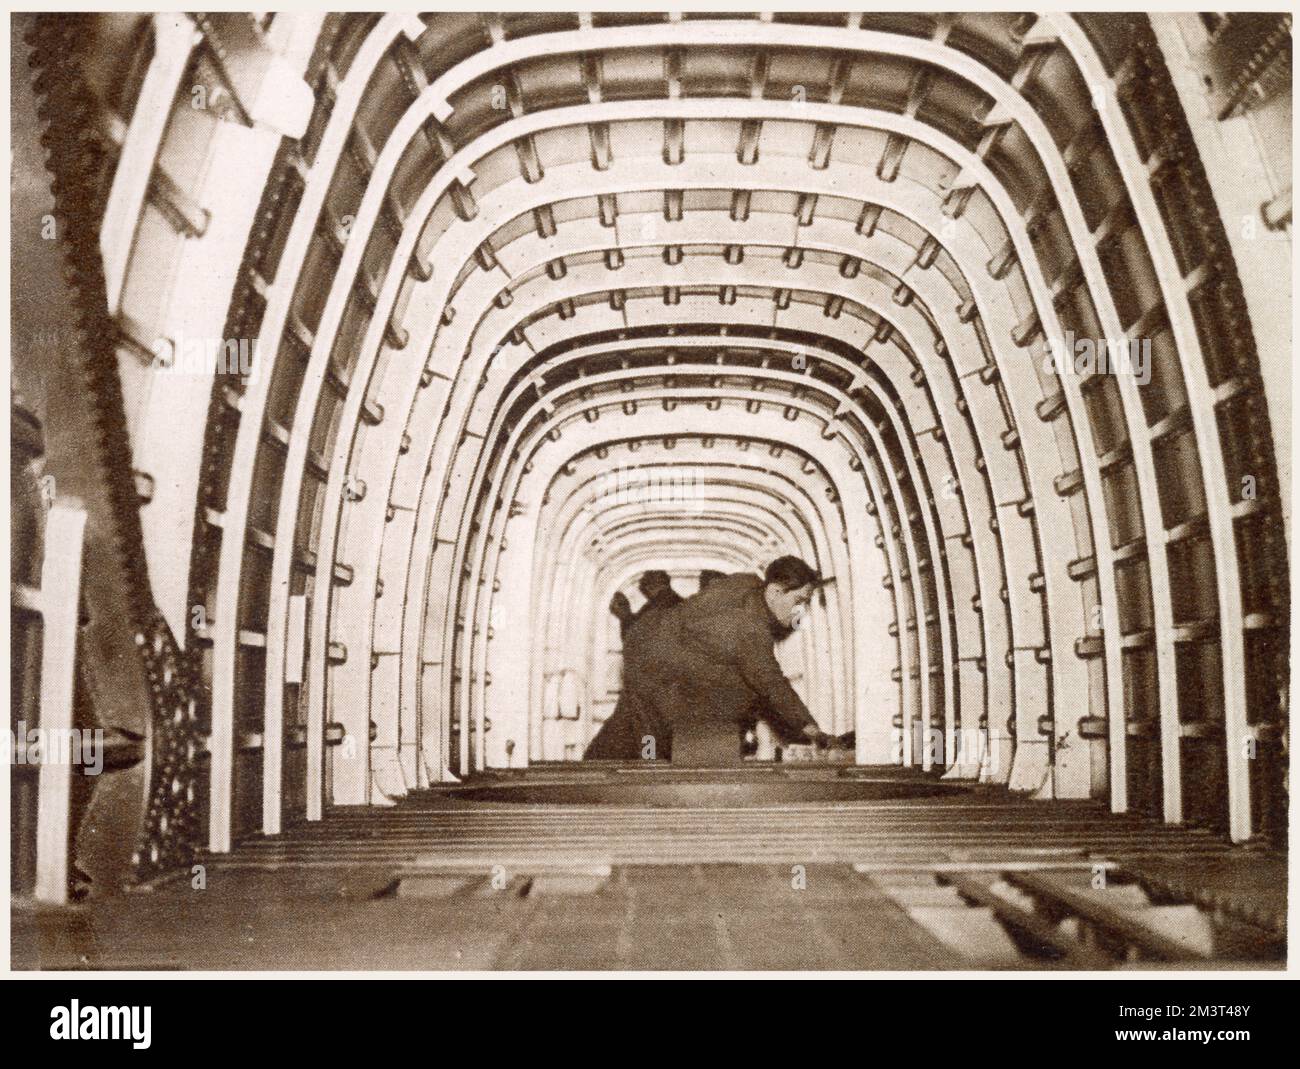 L'interno della fusoliera del bombardiere Whitley ad Armstrong Whitworth a Coventry. La fotografia dà una buona impressione delle dimensioni del velivolo e mostra la costruzione. Data: Marzo 1939 Foto Stock